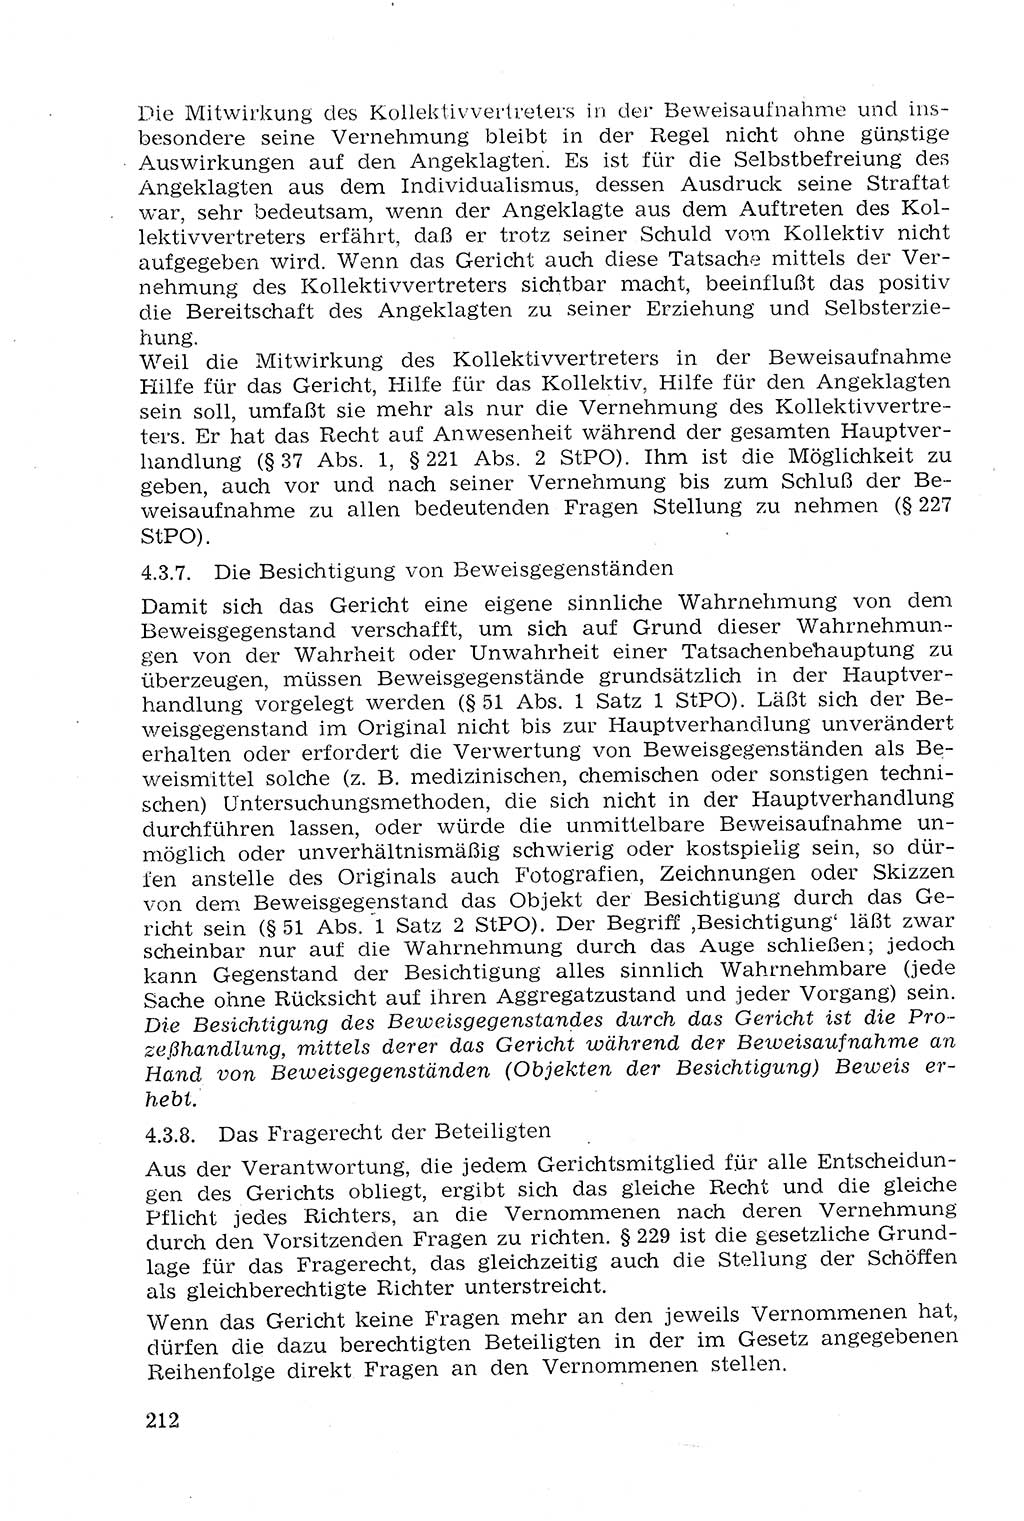 Strafprozeßrecht der DDR (Deutsche Demokratische Republik), Lehrmaterial 1969, Seite 212 (Strafprozeßr. DDR Lehrmat. 1969, S. 212)